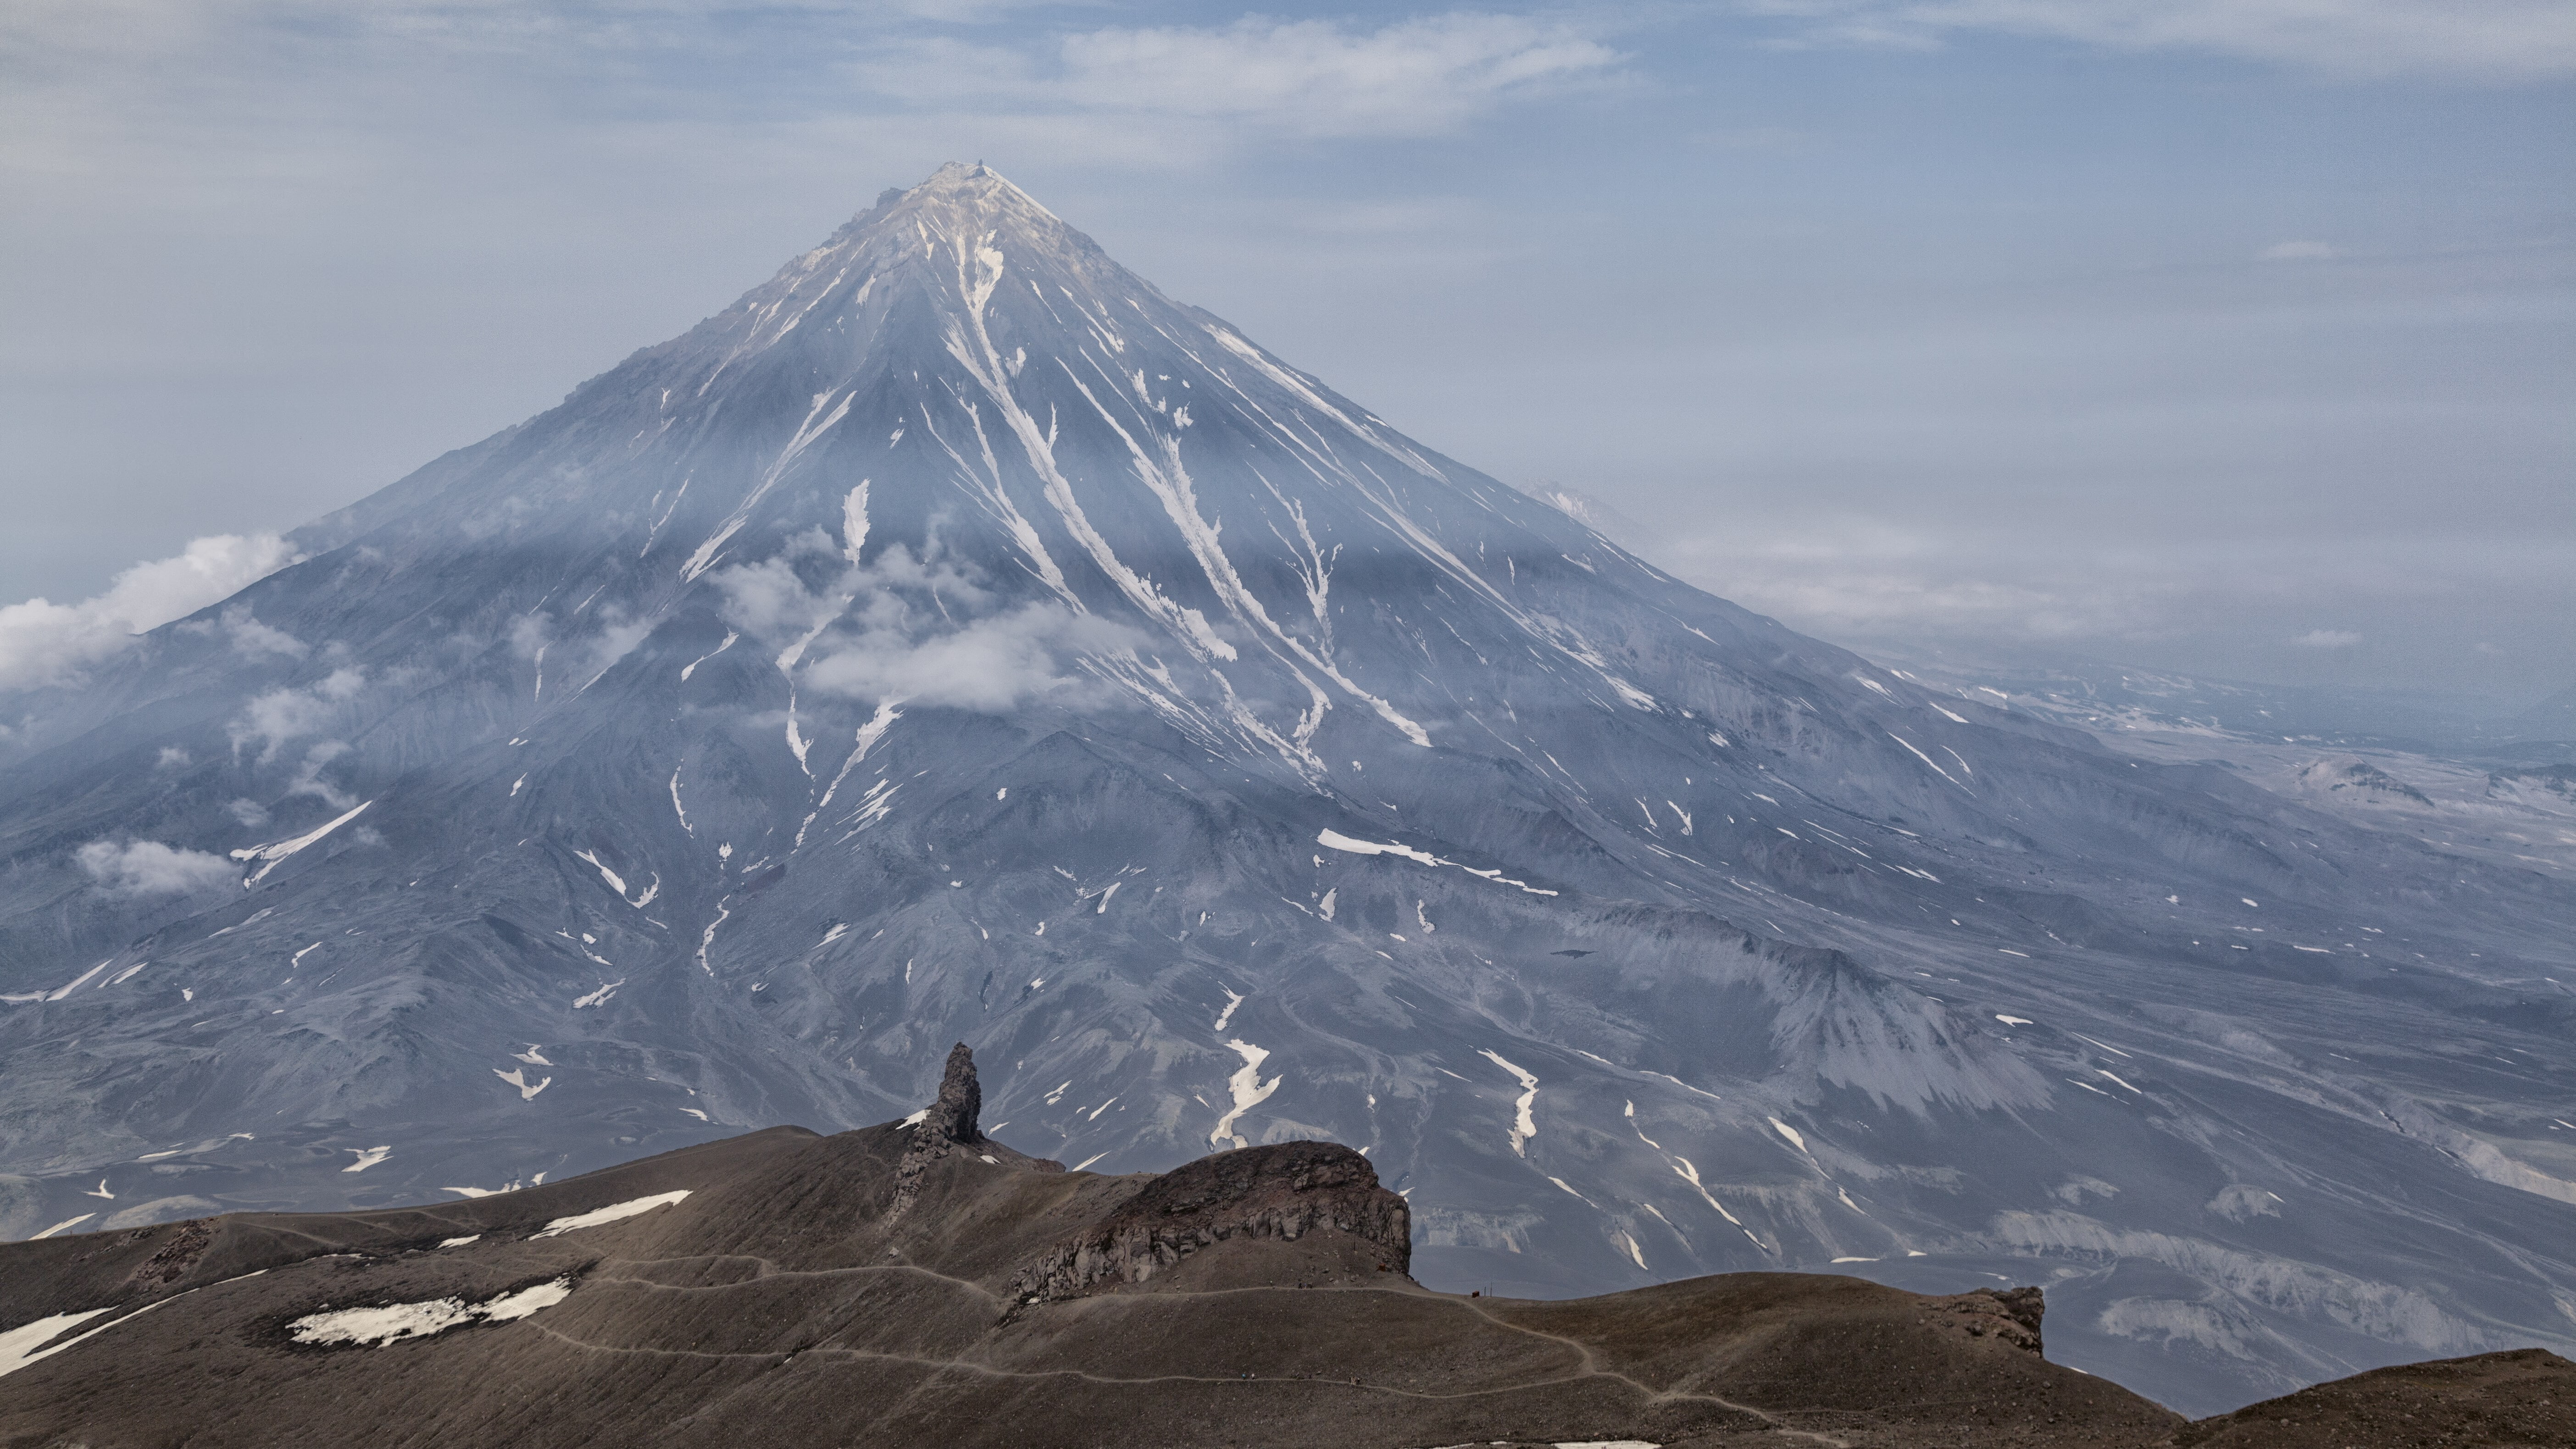 hd kamchatka volcano image, mountain, beauty in nature, scenics - nature